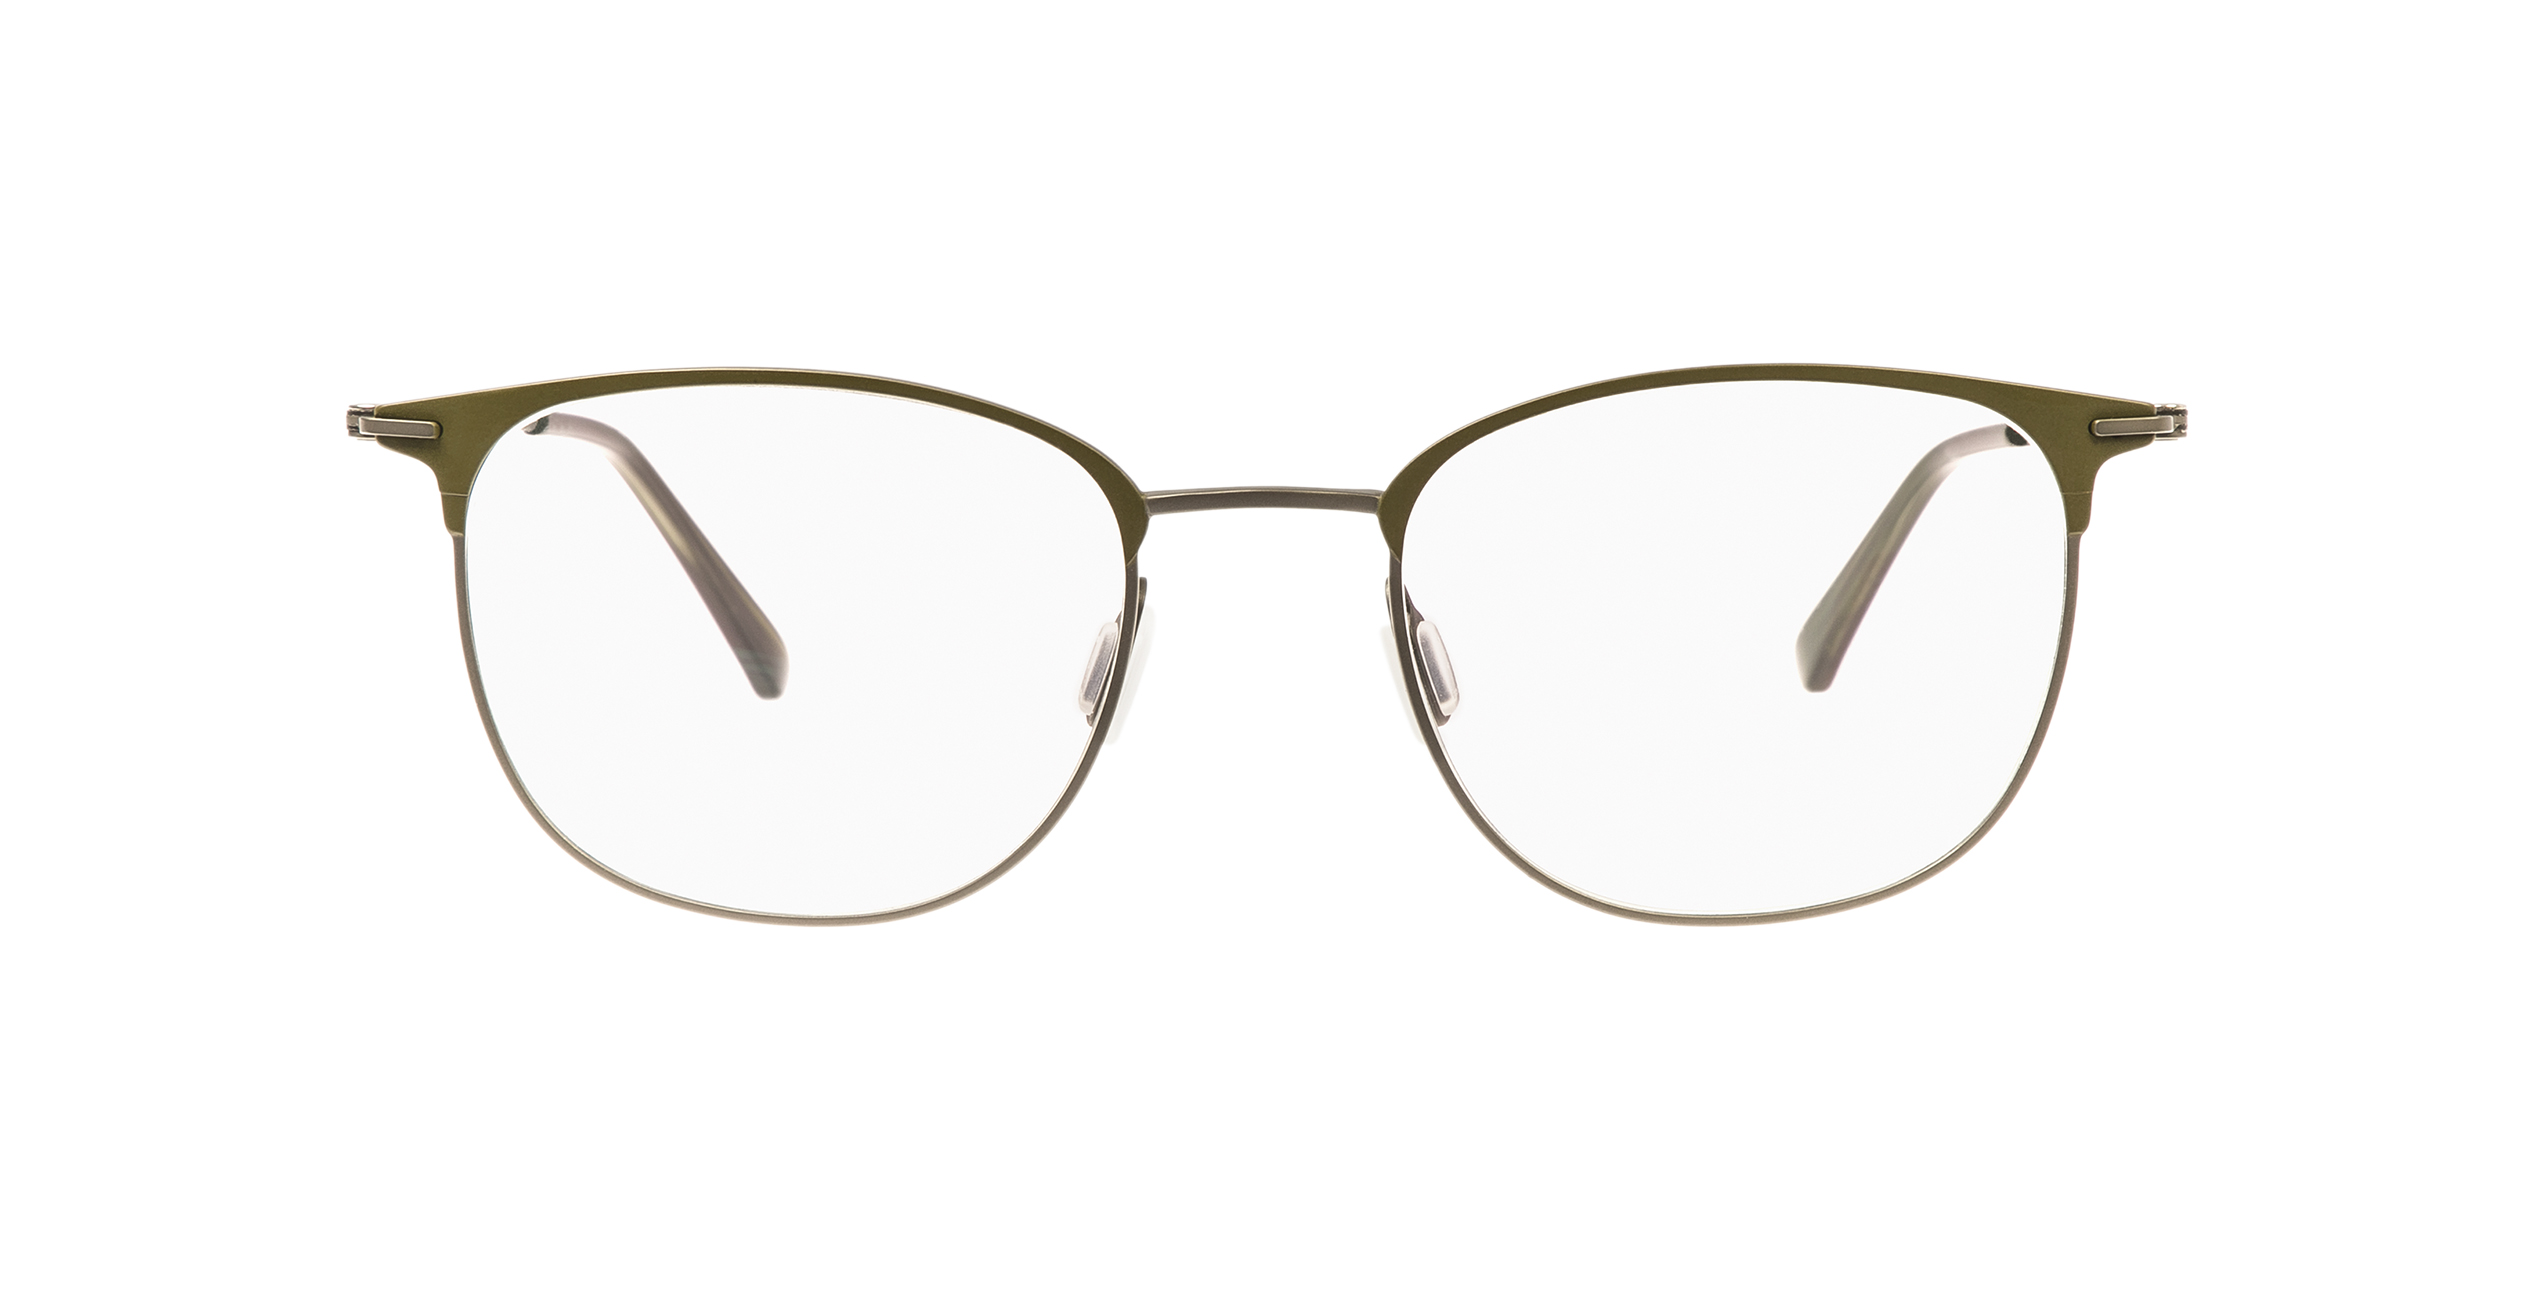 Die besten Favoriten - Suchen Sie bei uns die Baldessarini brille entsprechend Ihrer Wünsche